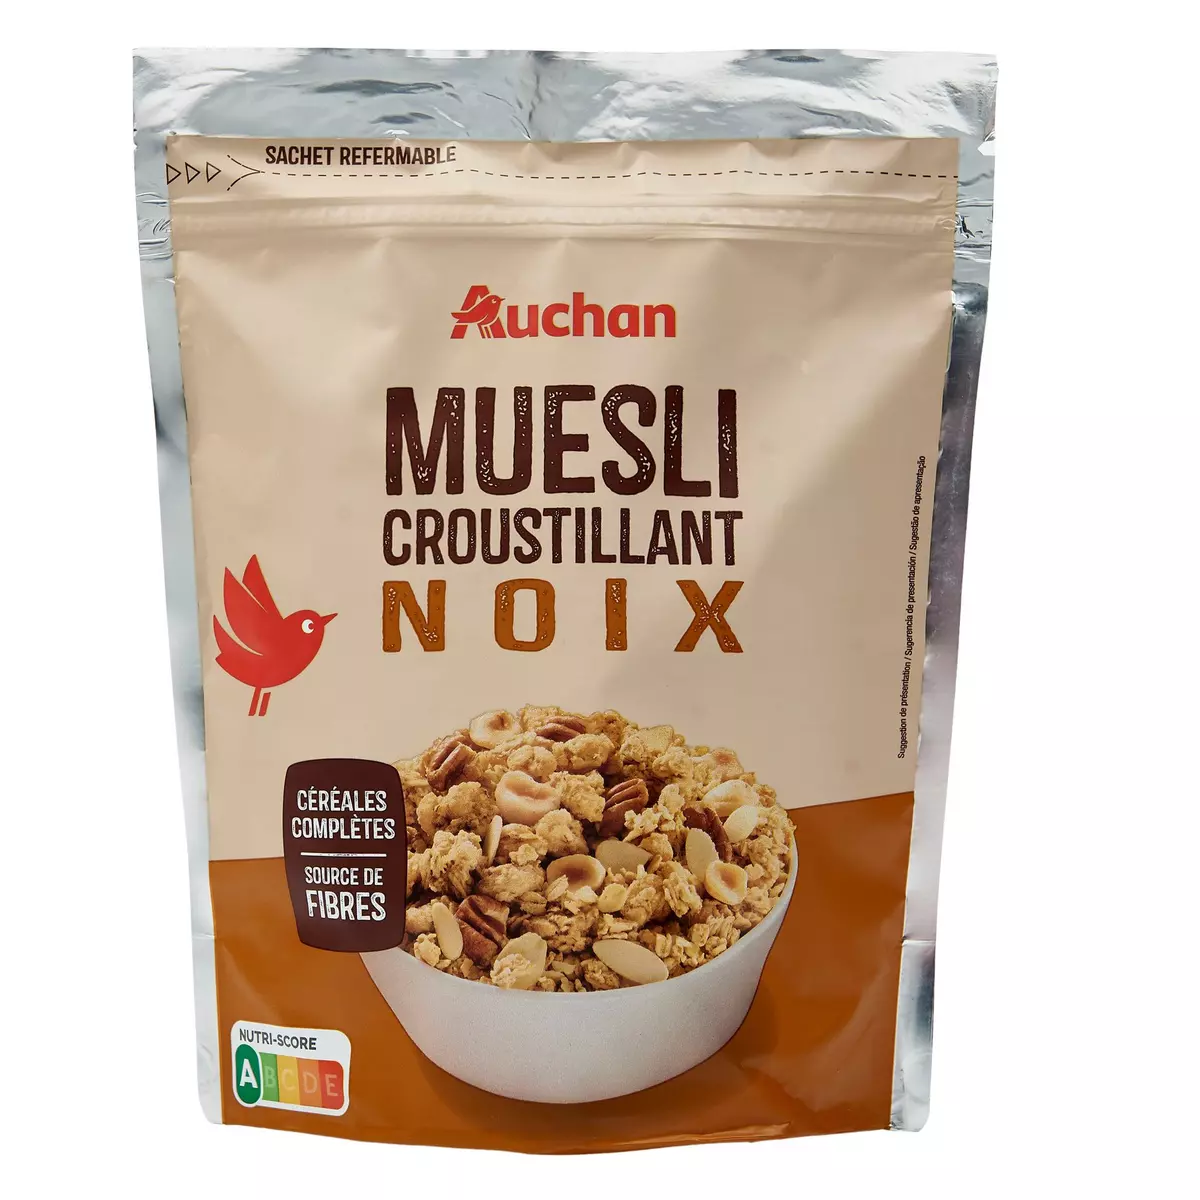 AUCHAN Muesli croustillant noix 450g